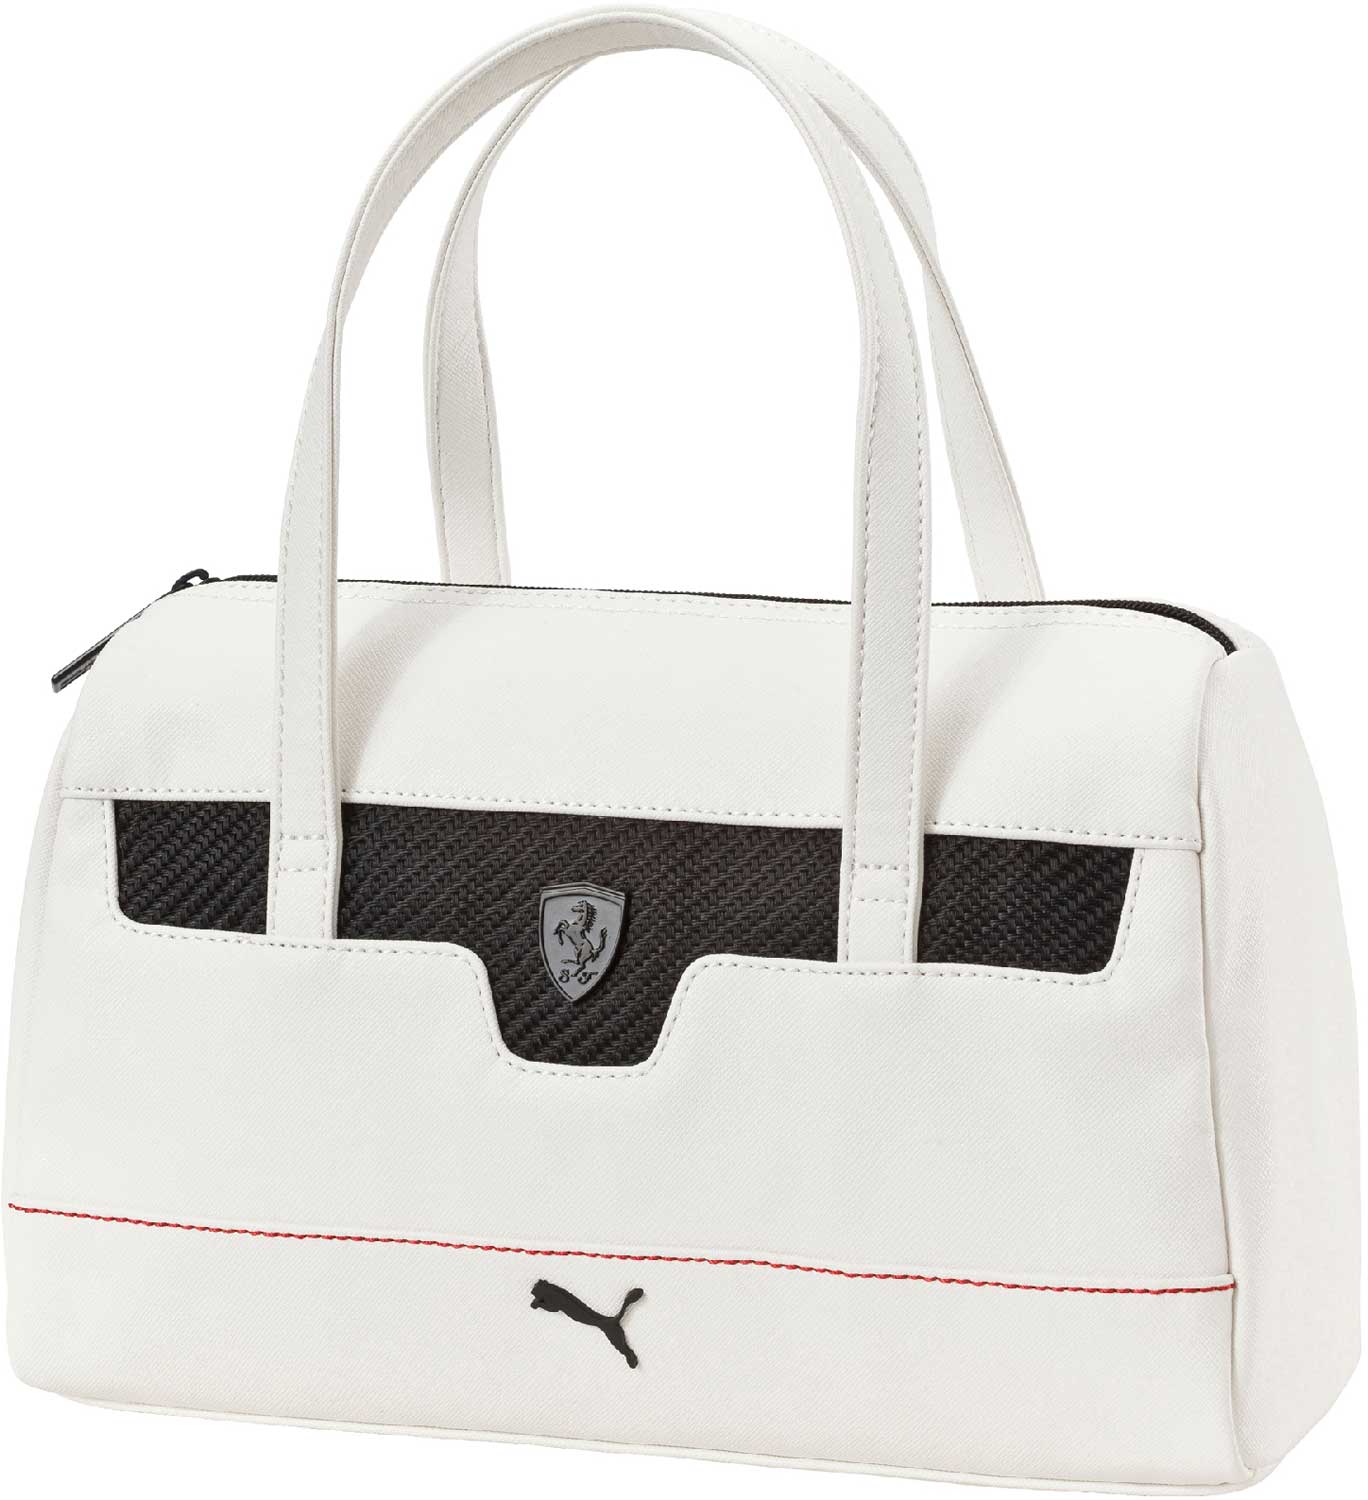 Puma women (handbag pink) | Women handbags, Pink handbags, Handbag